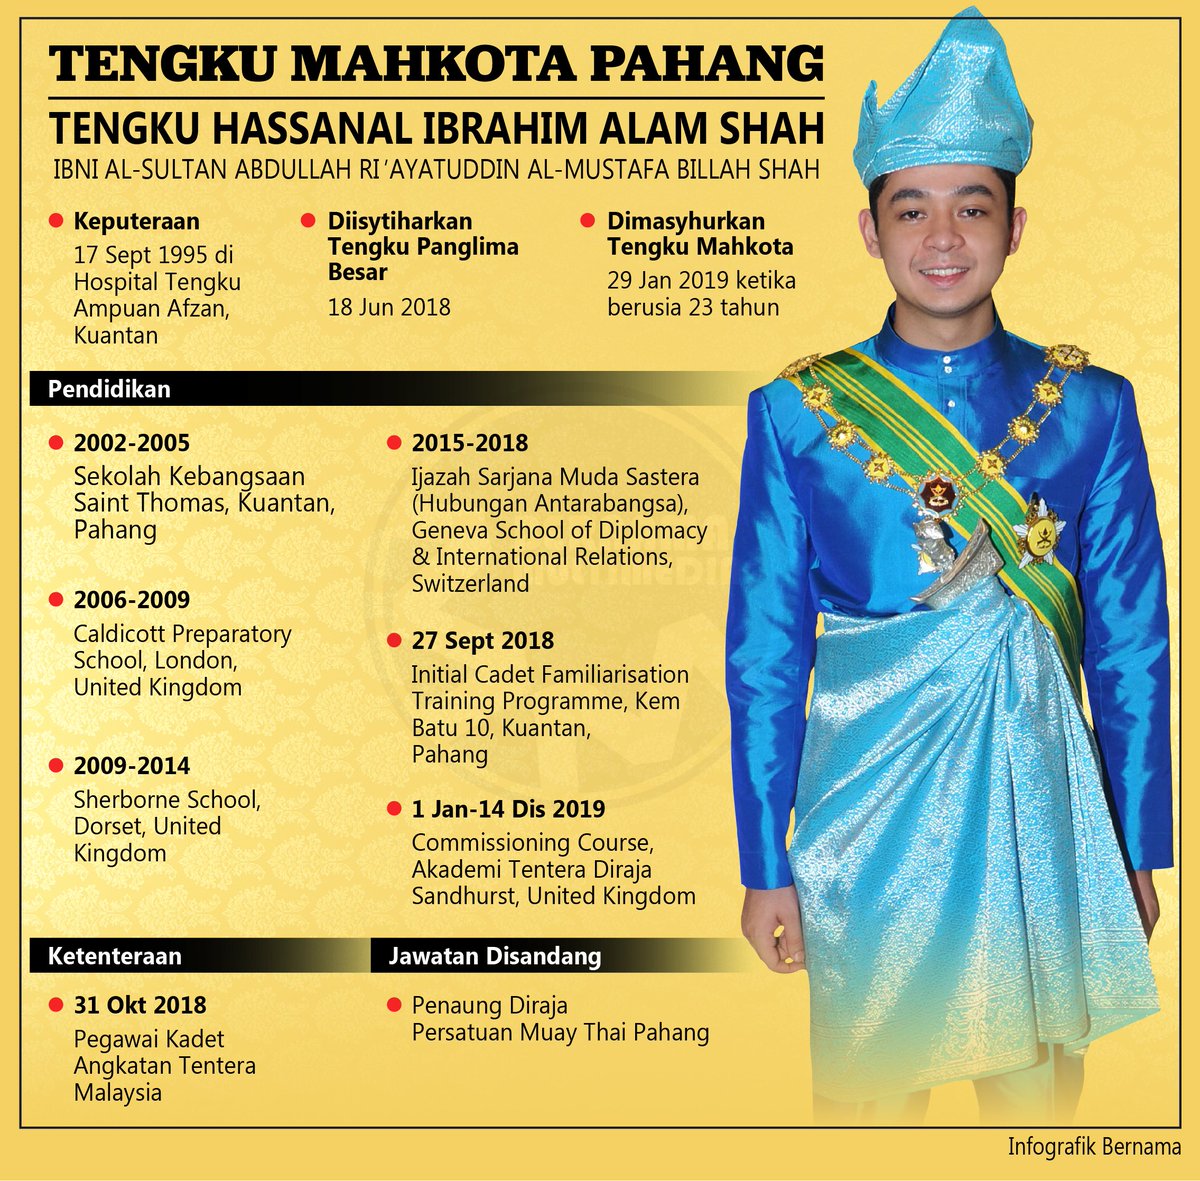 Tengku hassanal ibrahim alam shah siblings